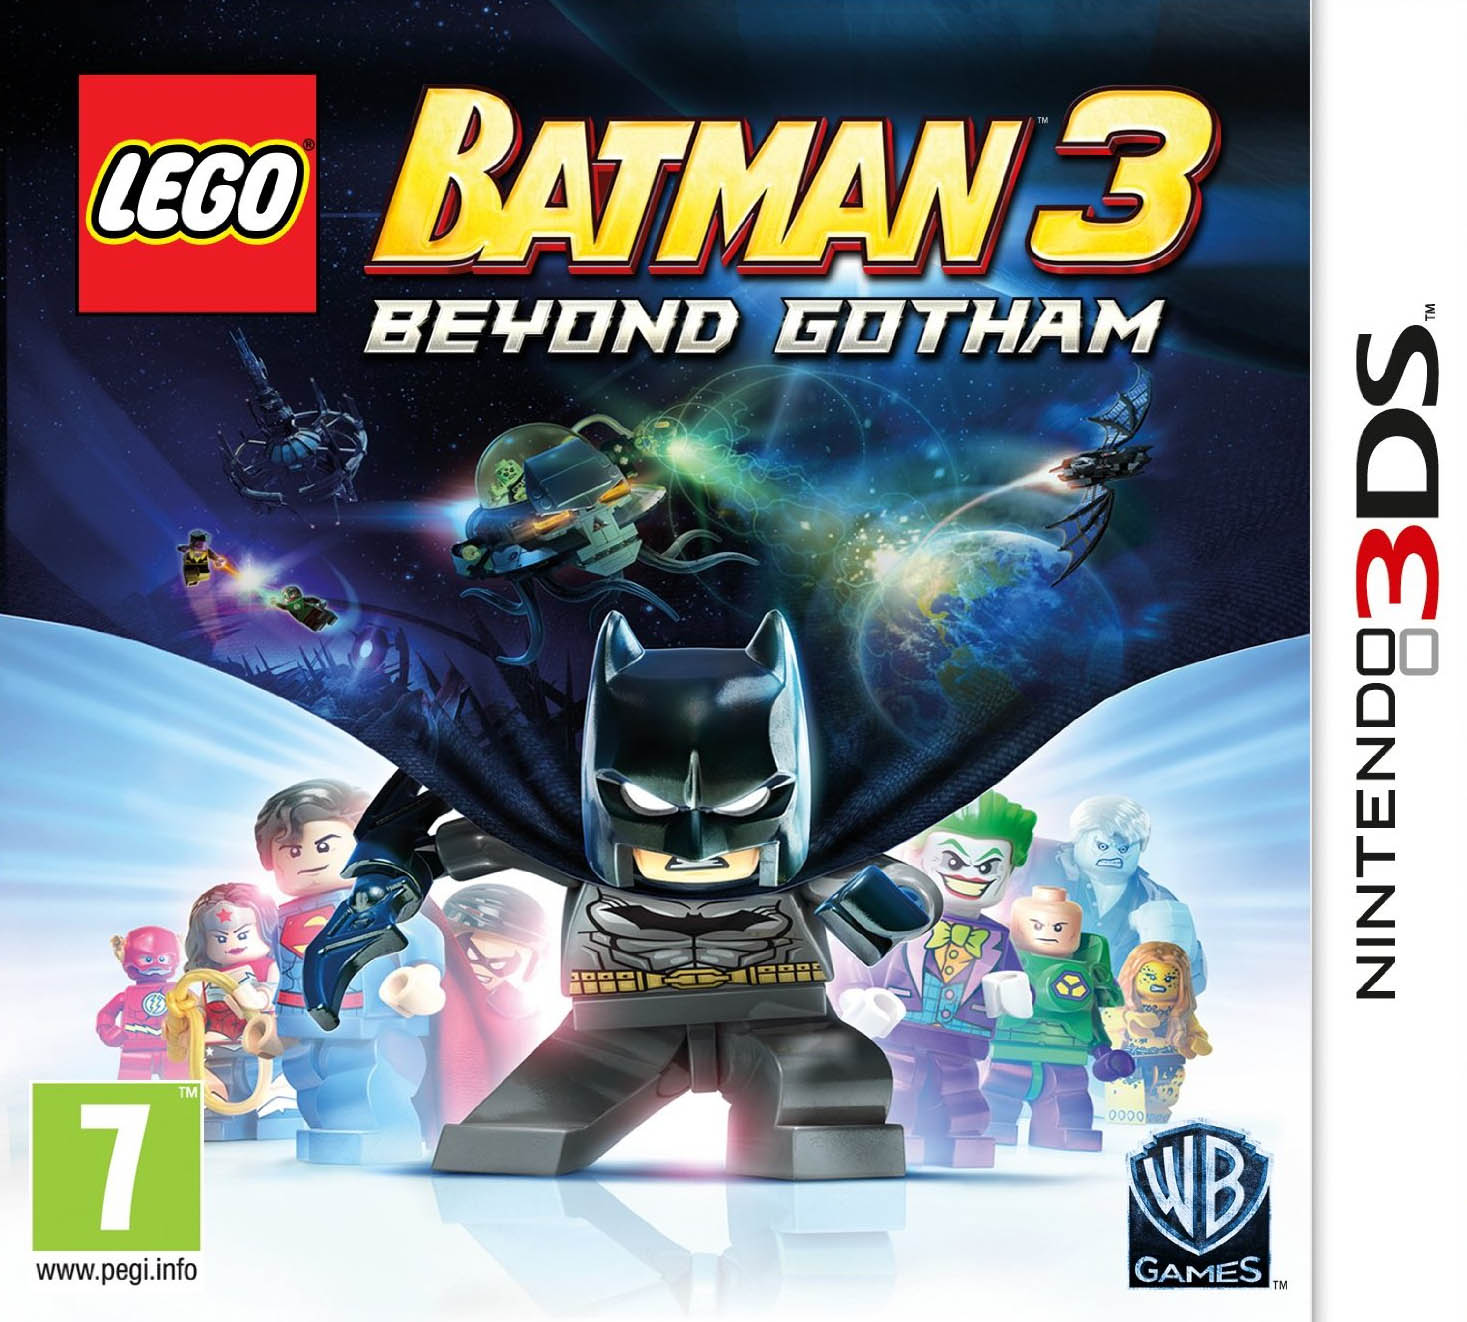 LEGO Batman 3: Beyond Gotham von Batman